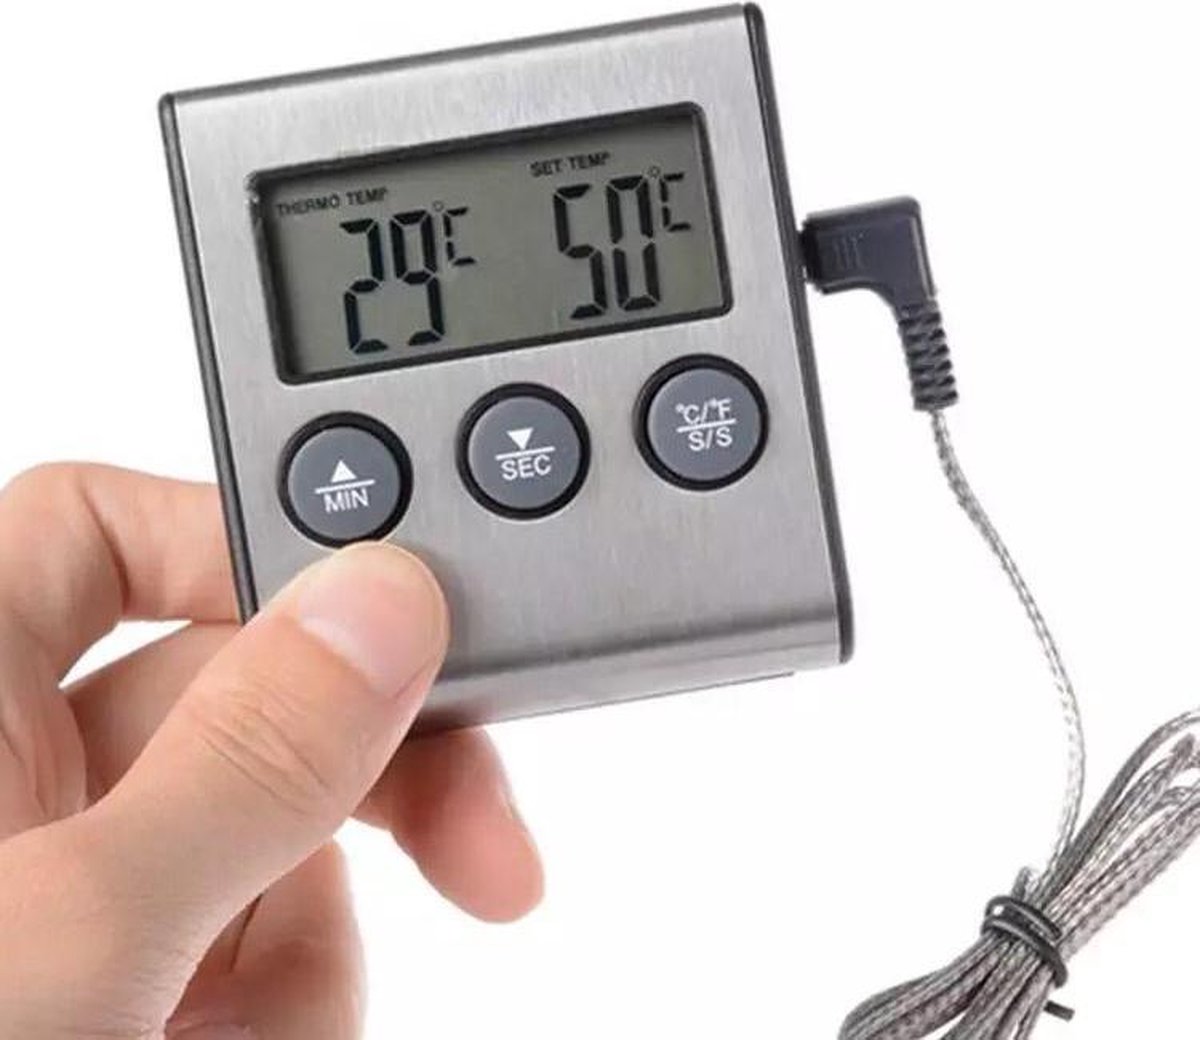 Boticz - 2-in-1 Magnetische Digitale Kern Thermometer Met Keuken Timer Alarm - Magnetische Vloeistof/Vlees Temperatuurmeter Met Meetsonde Draad & Kook Timer - 0-250 Graden Celcius - Inclusief gratis batterijen - Boticz